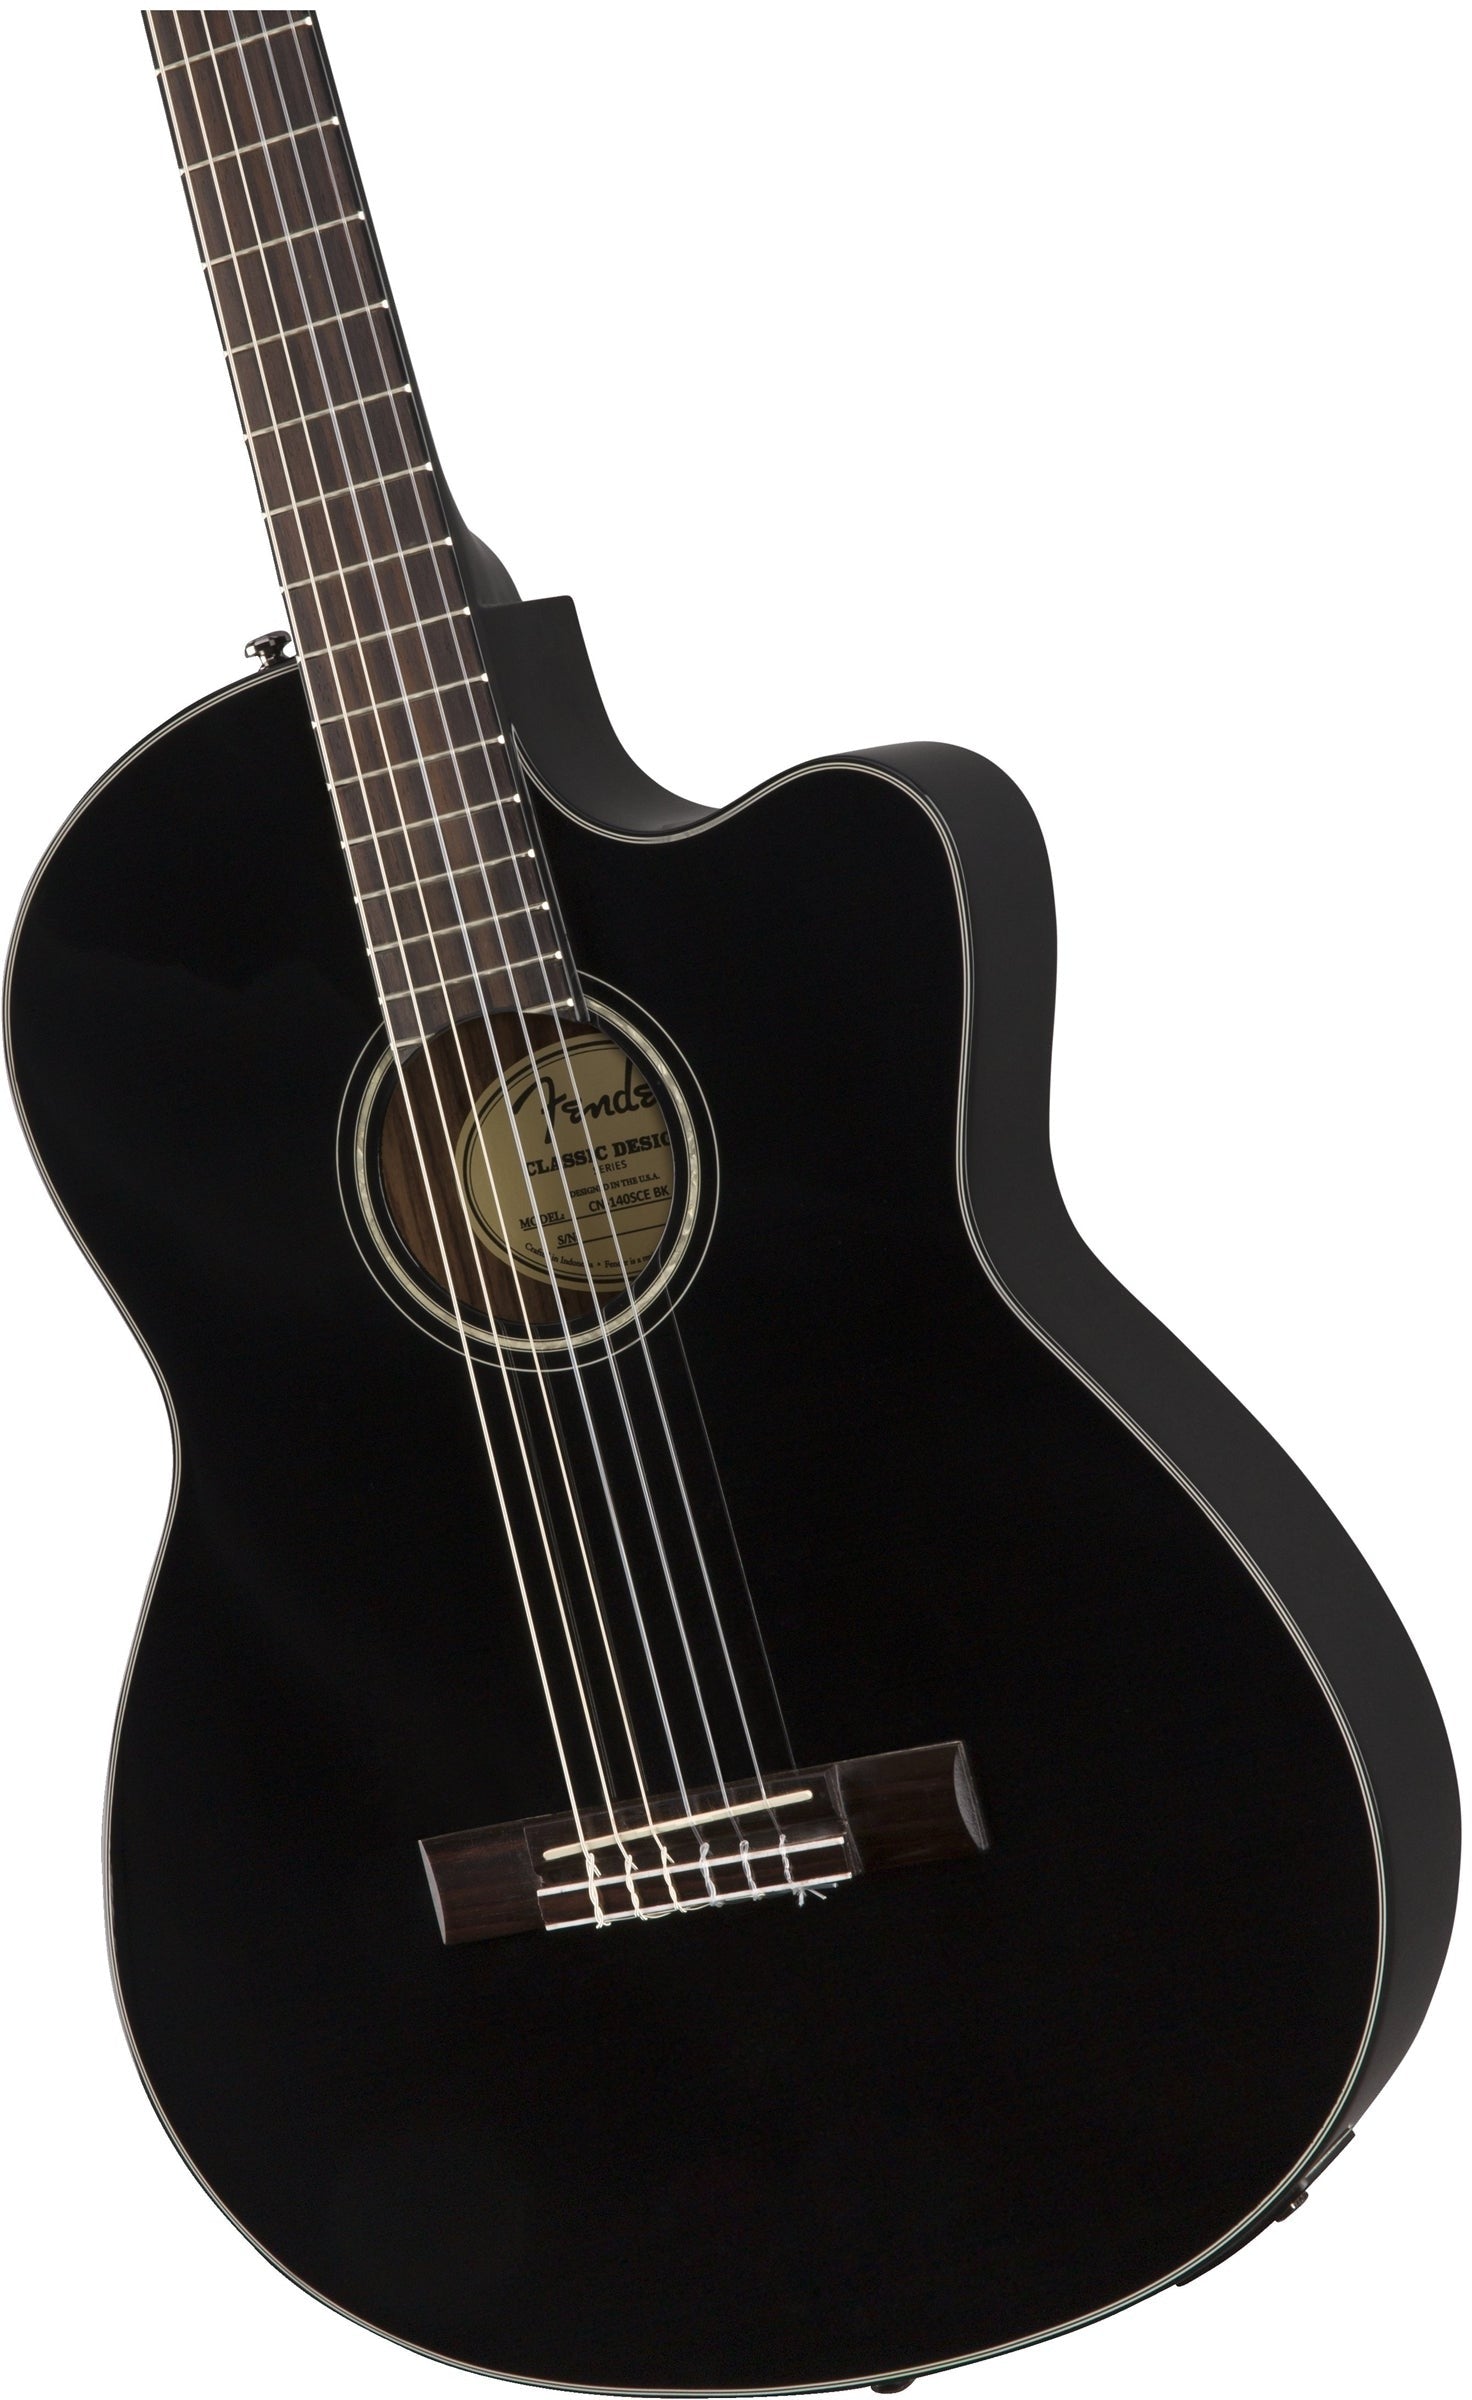 Guitarra Fender negra con fondo y aros de Palosanto. Si buscabas una guitarra para desarrollar tus habilidades, te presentamos la guitarra EQ Fender con Estuche incluido